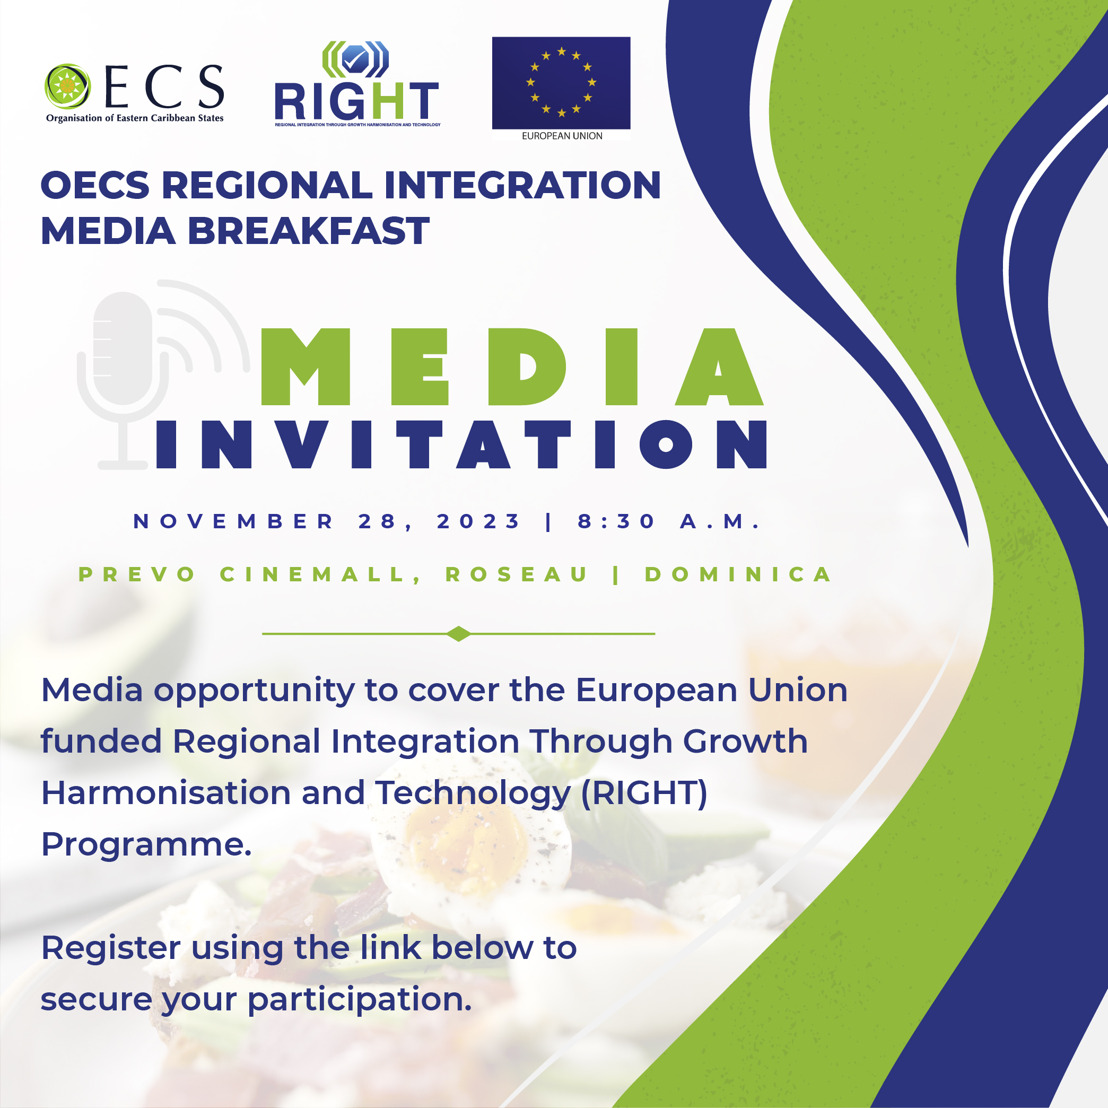 [Media Invitation - Dominica] OECS Regional Integration Media Breakfast